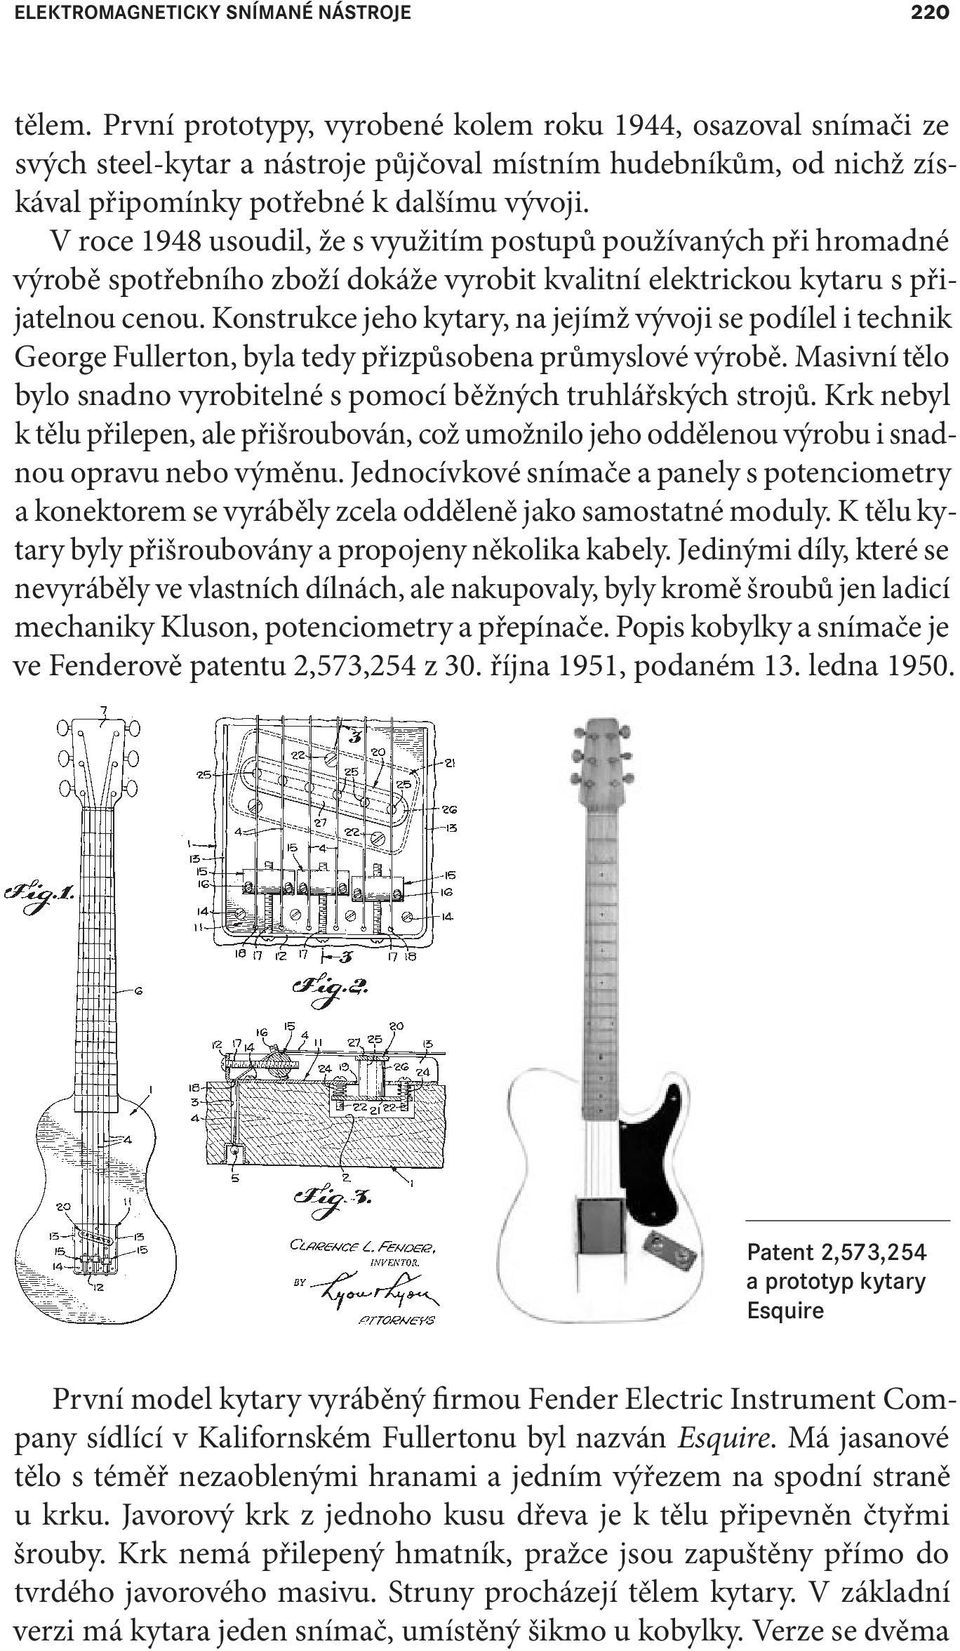 V roce 1948 usoudil, že s využitím postupů používaných při hromadné výrobě spotřebního zboží dokáže vyrobit kvalitní elektrickou kytaru s přijatelnou cenou.